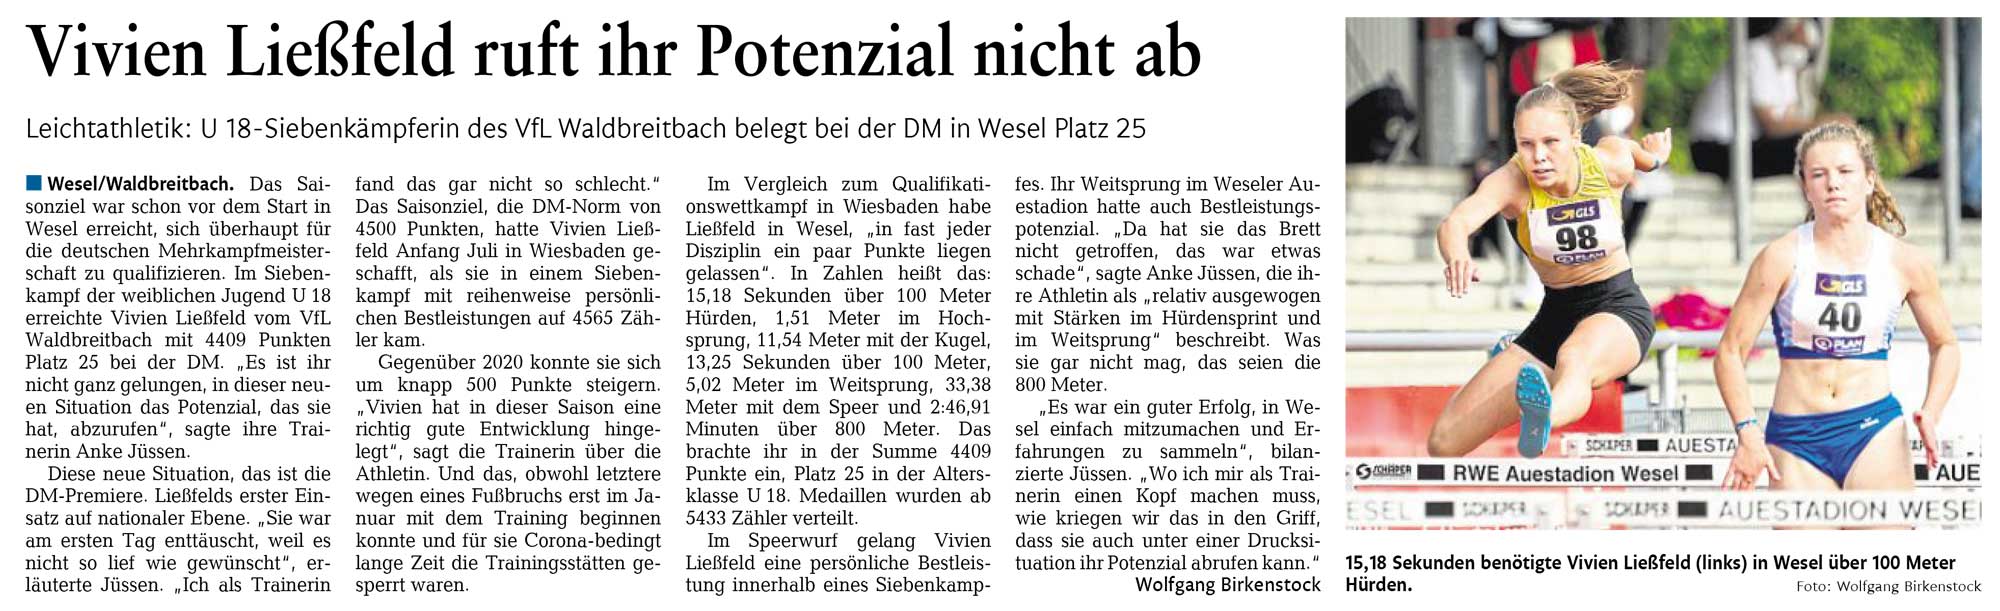 2021-08-27 DM 7K Wesel Vivien Ließfeld